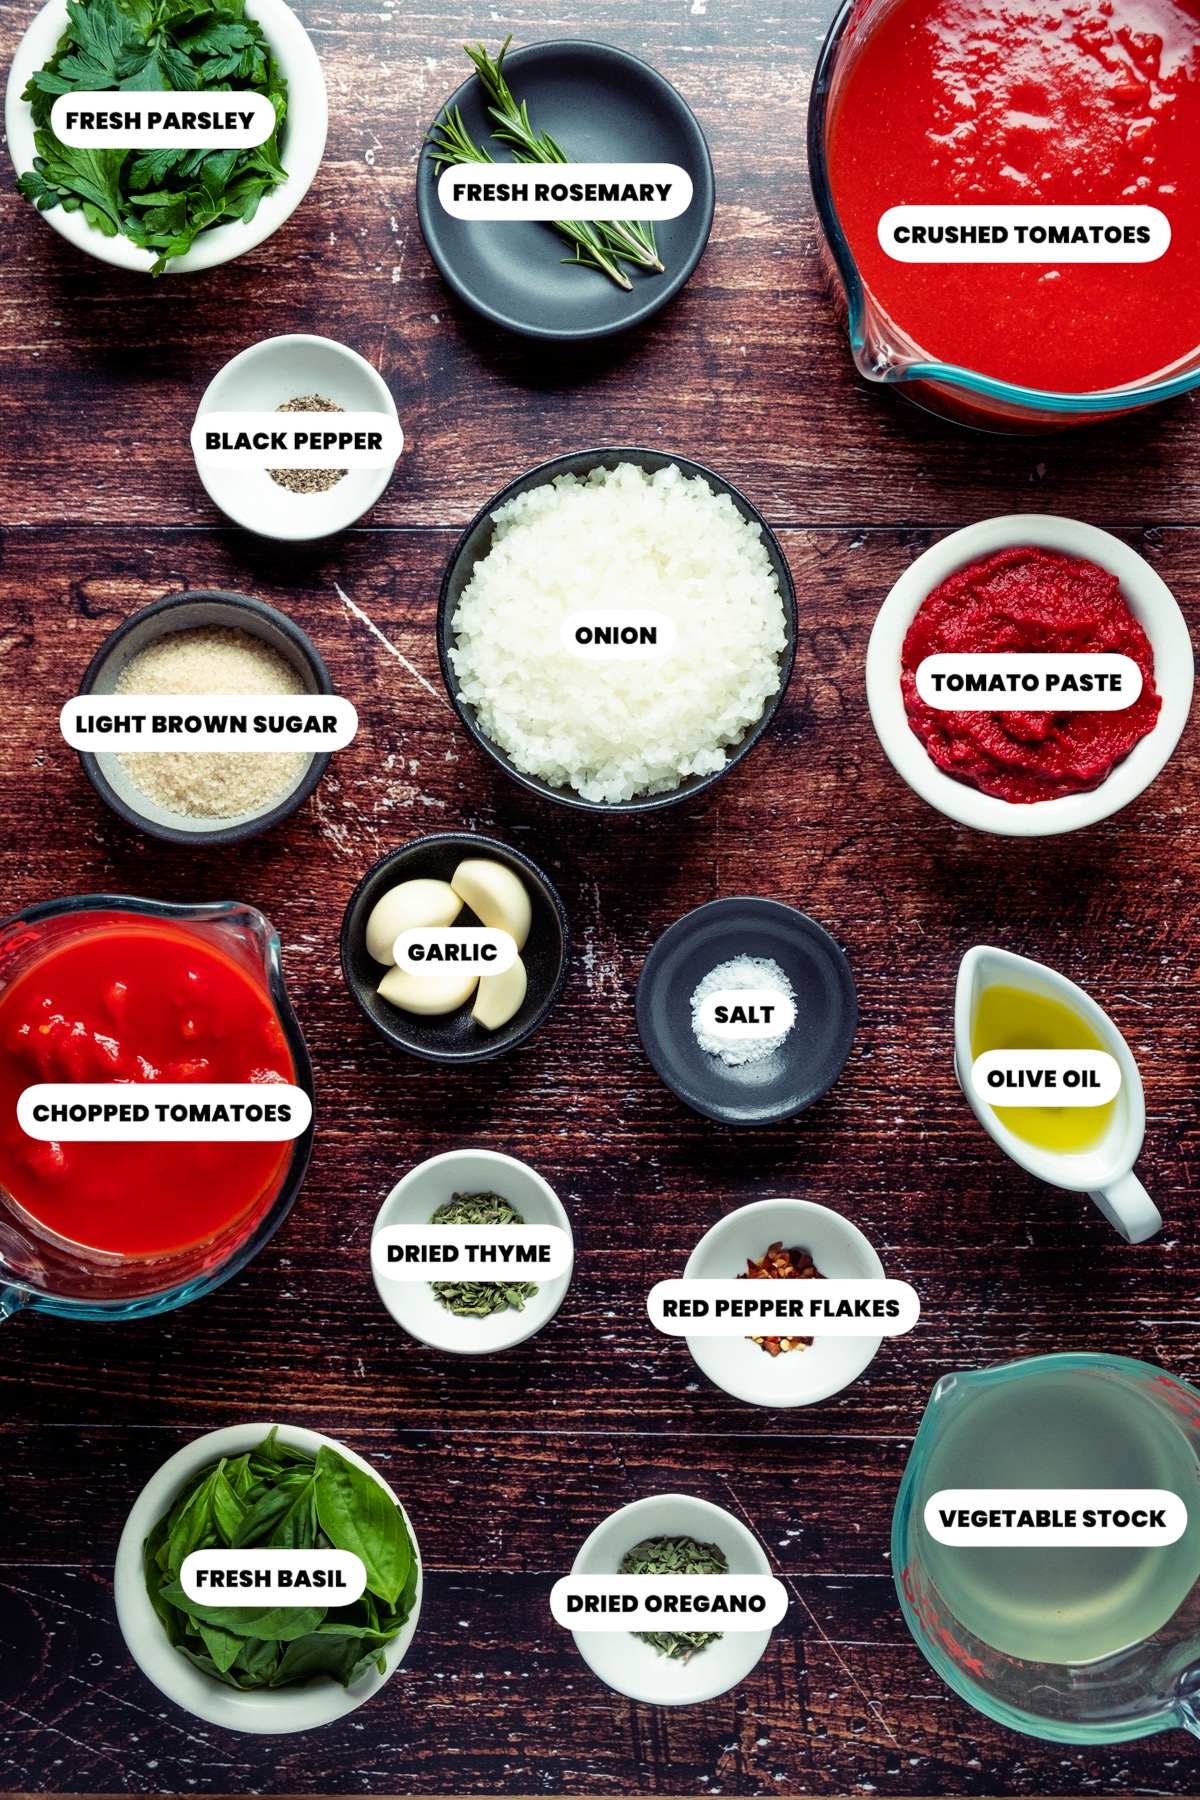 Ingredients to make vegan spaghetti sauce.